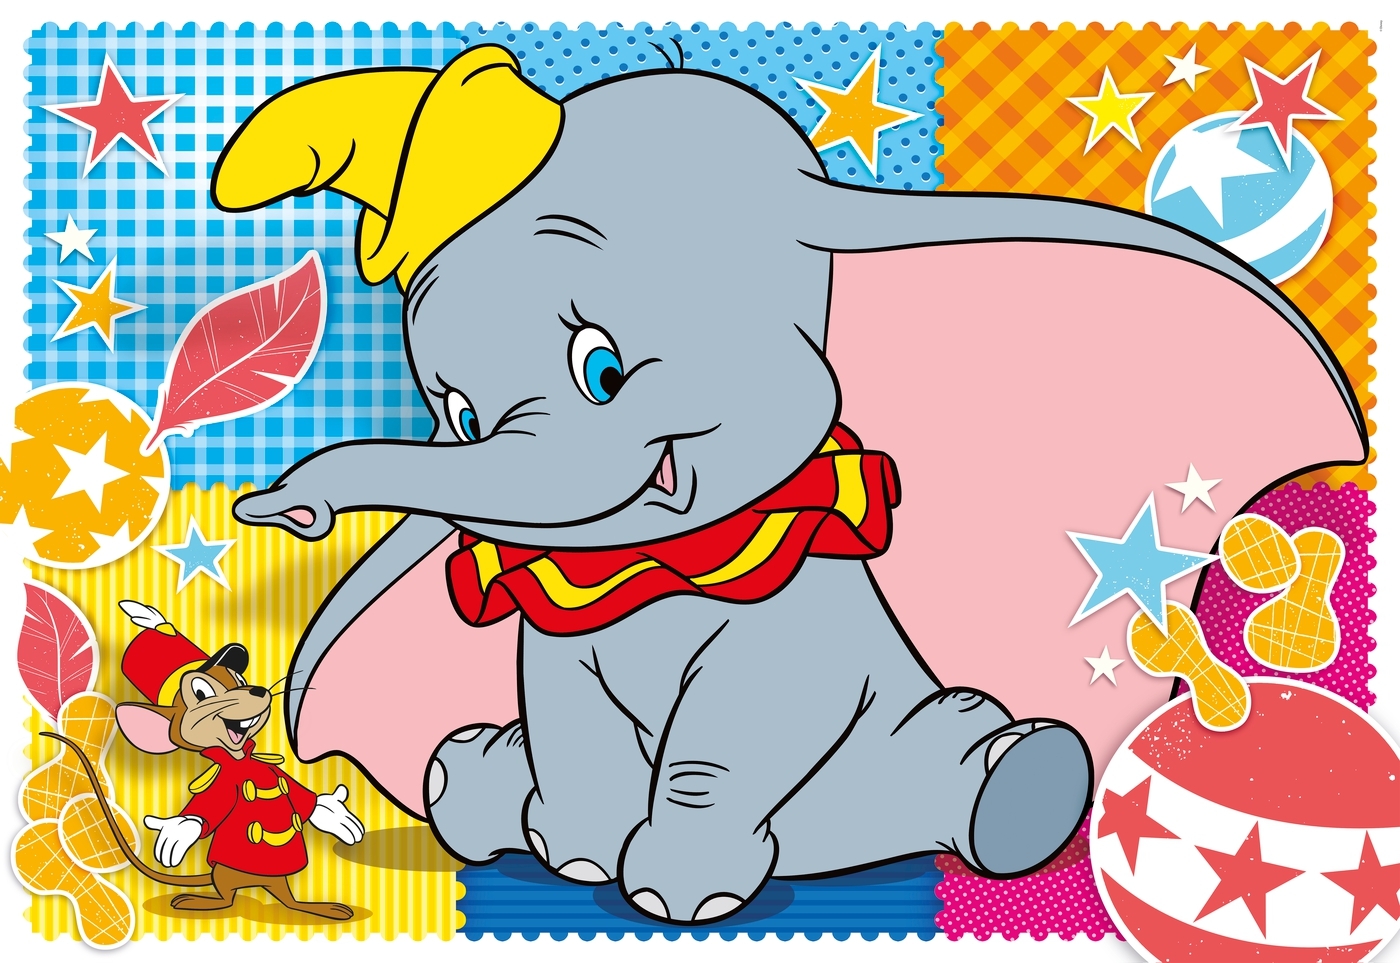 Puzzle podłogowe SuperColor 40: Dumbo (25461)